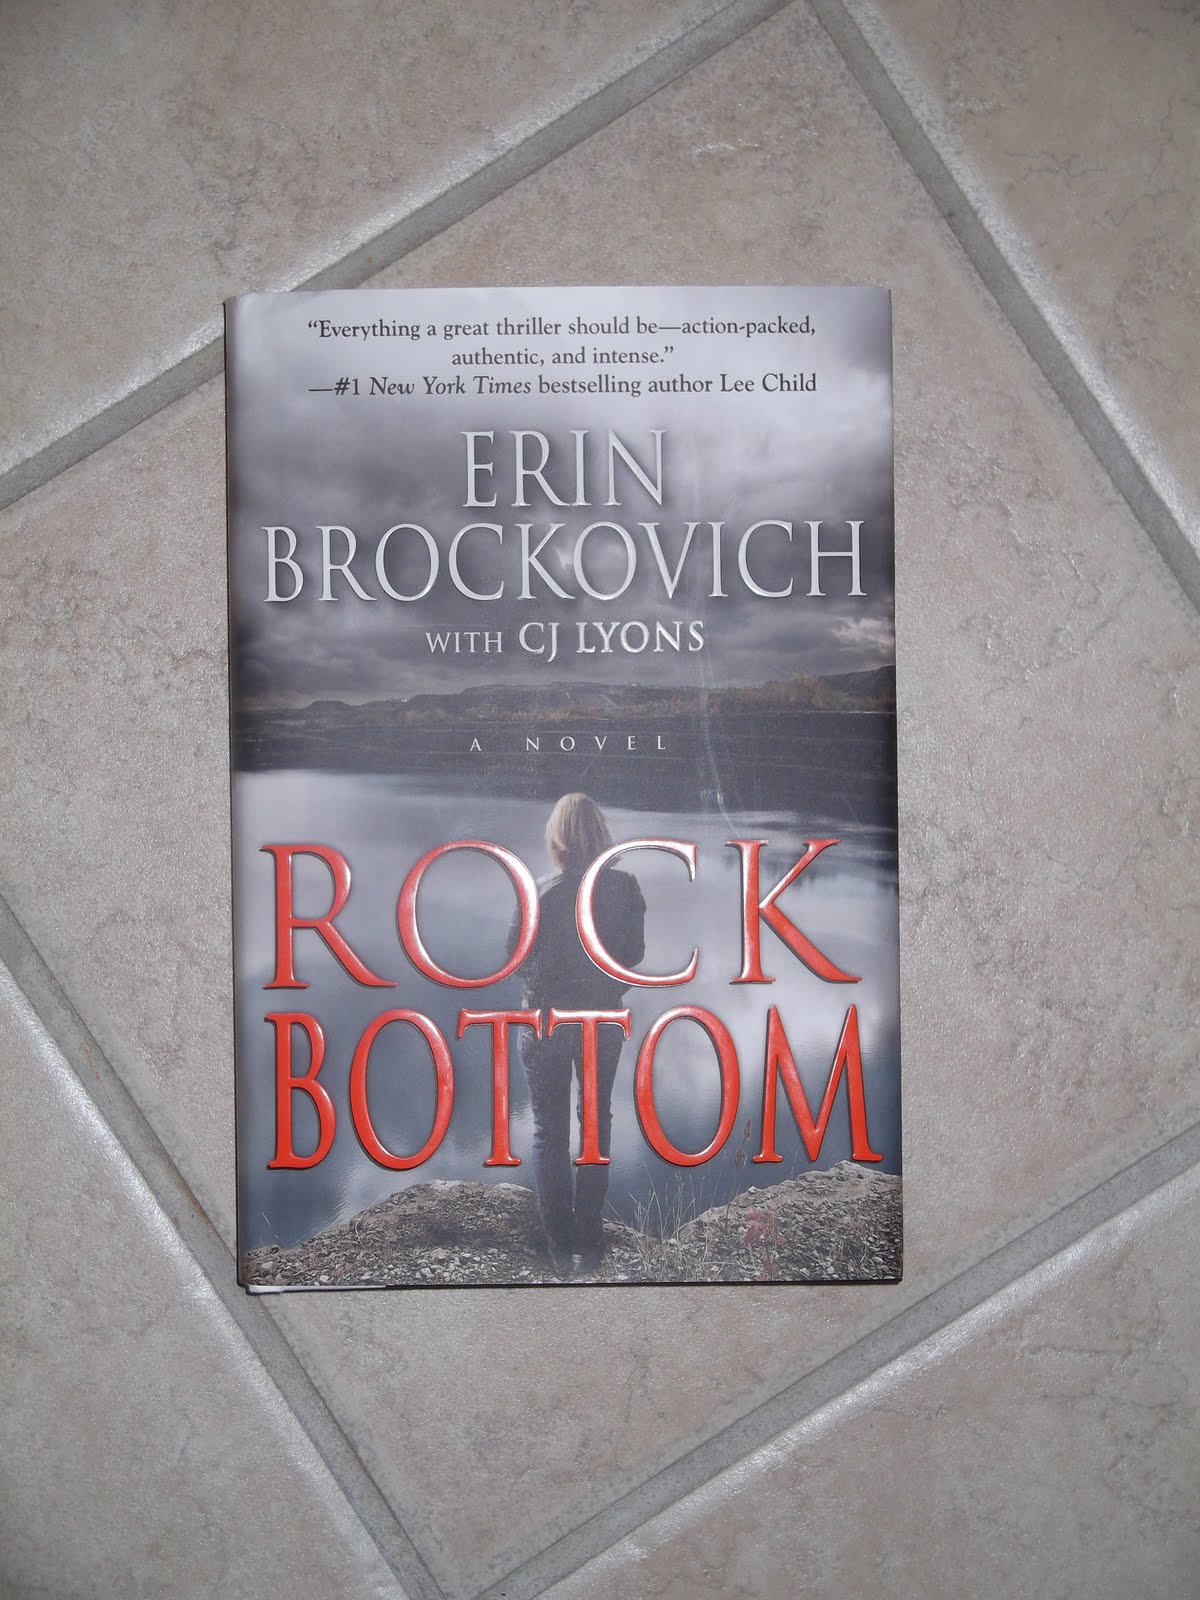 Bottom by Erin Brockovich